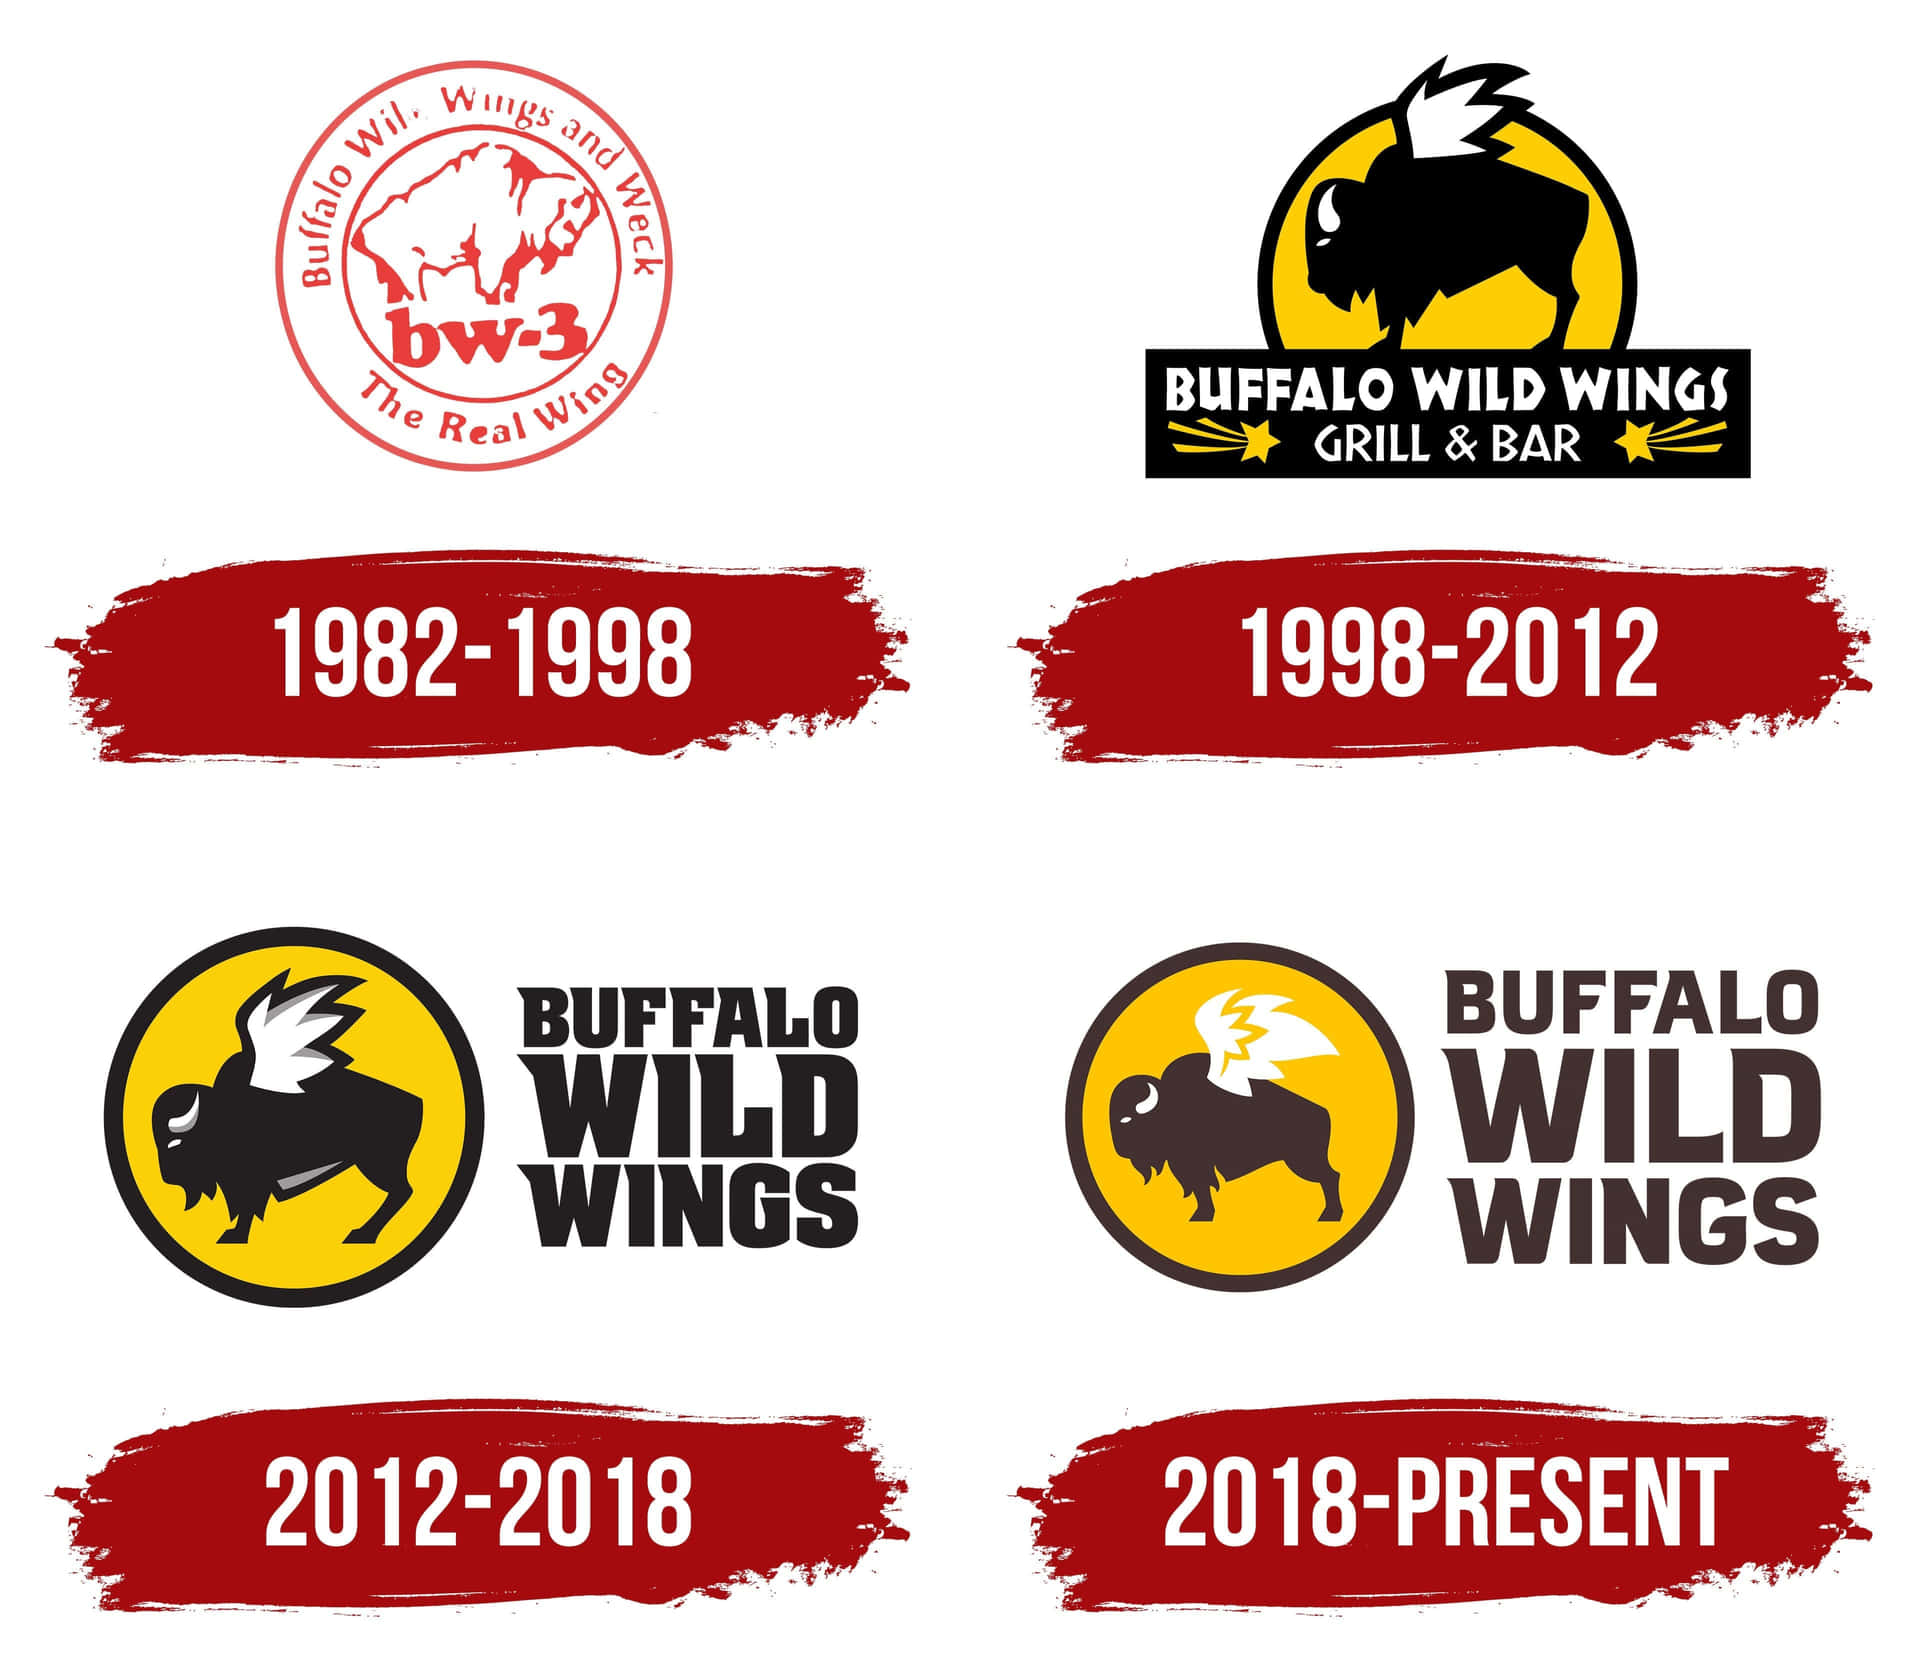 Enjoy freshly prepared Buffalo Wild Wings!